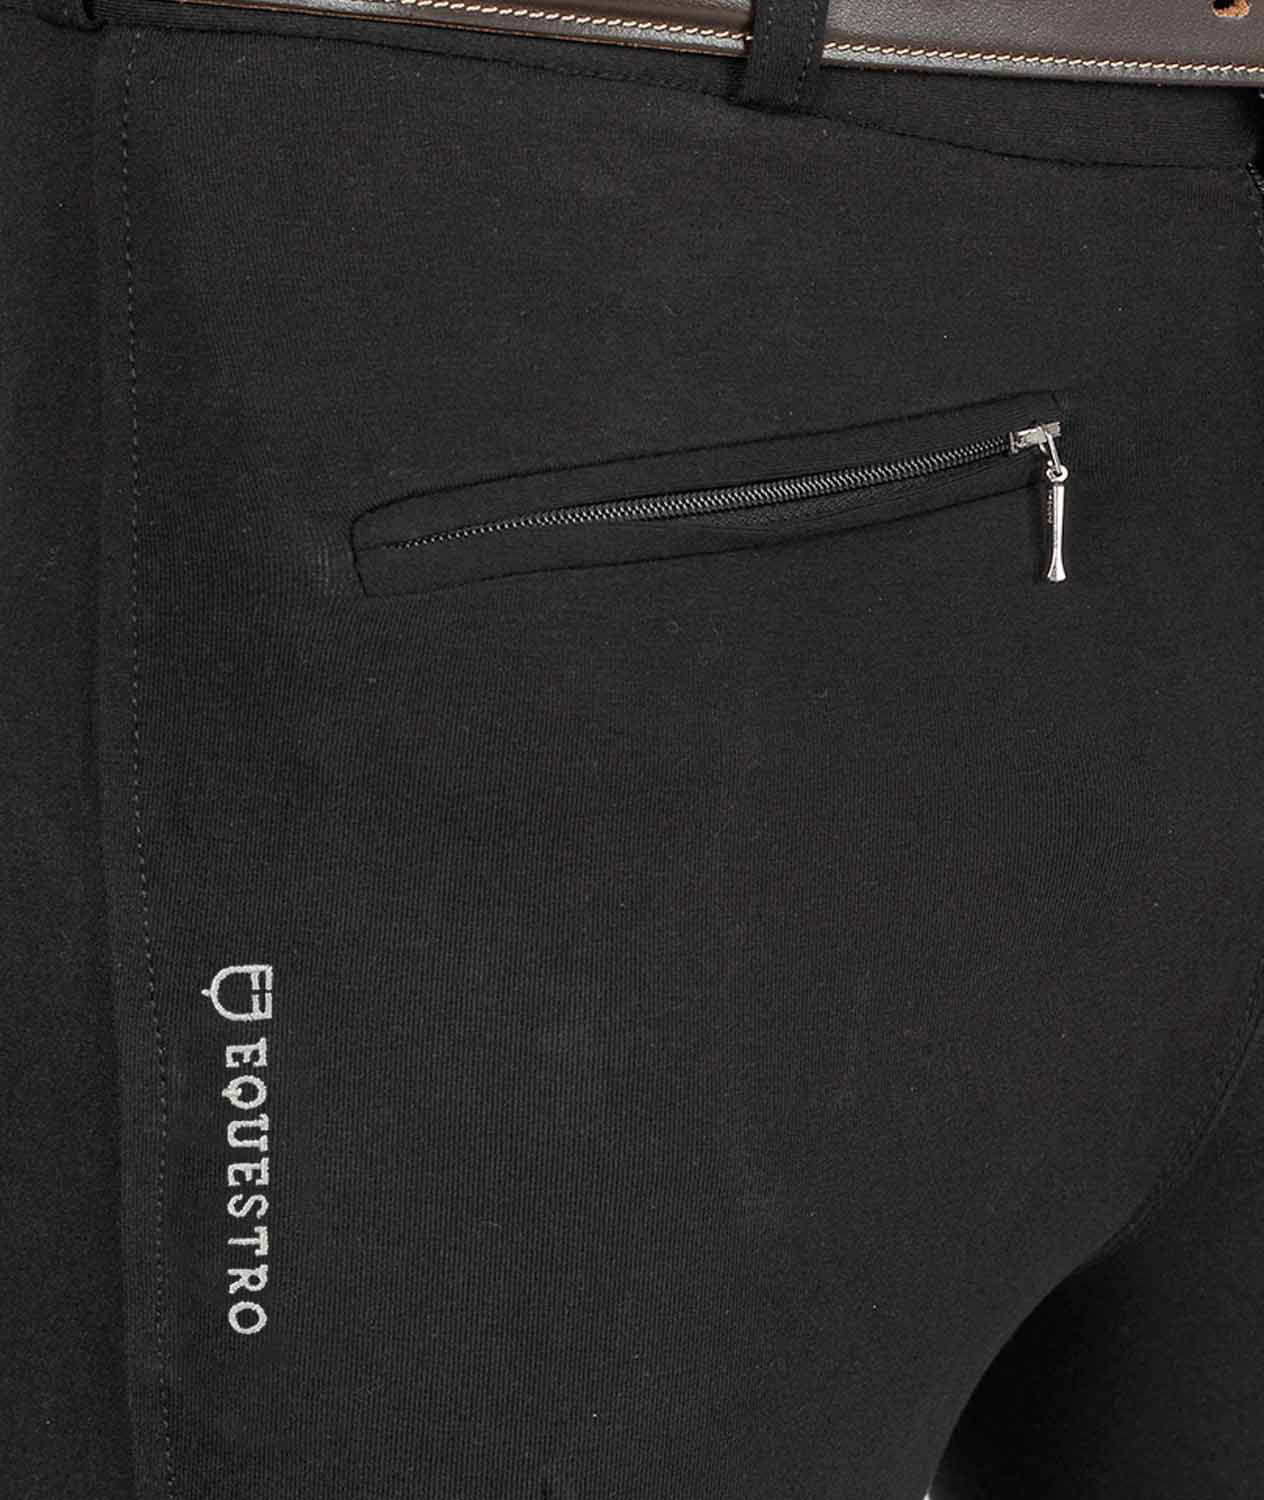 Pantalone da uomo per equitazione URANO a vita bassa in cotone elasticizzato - foto 5